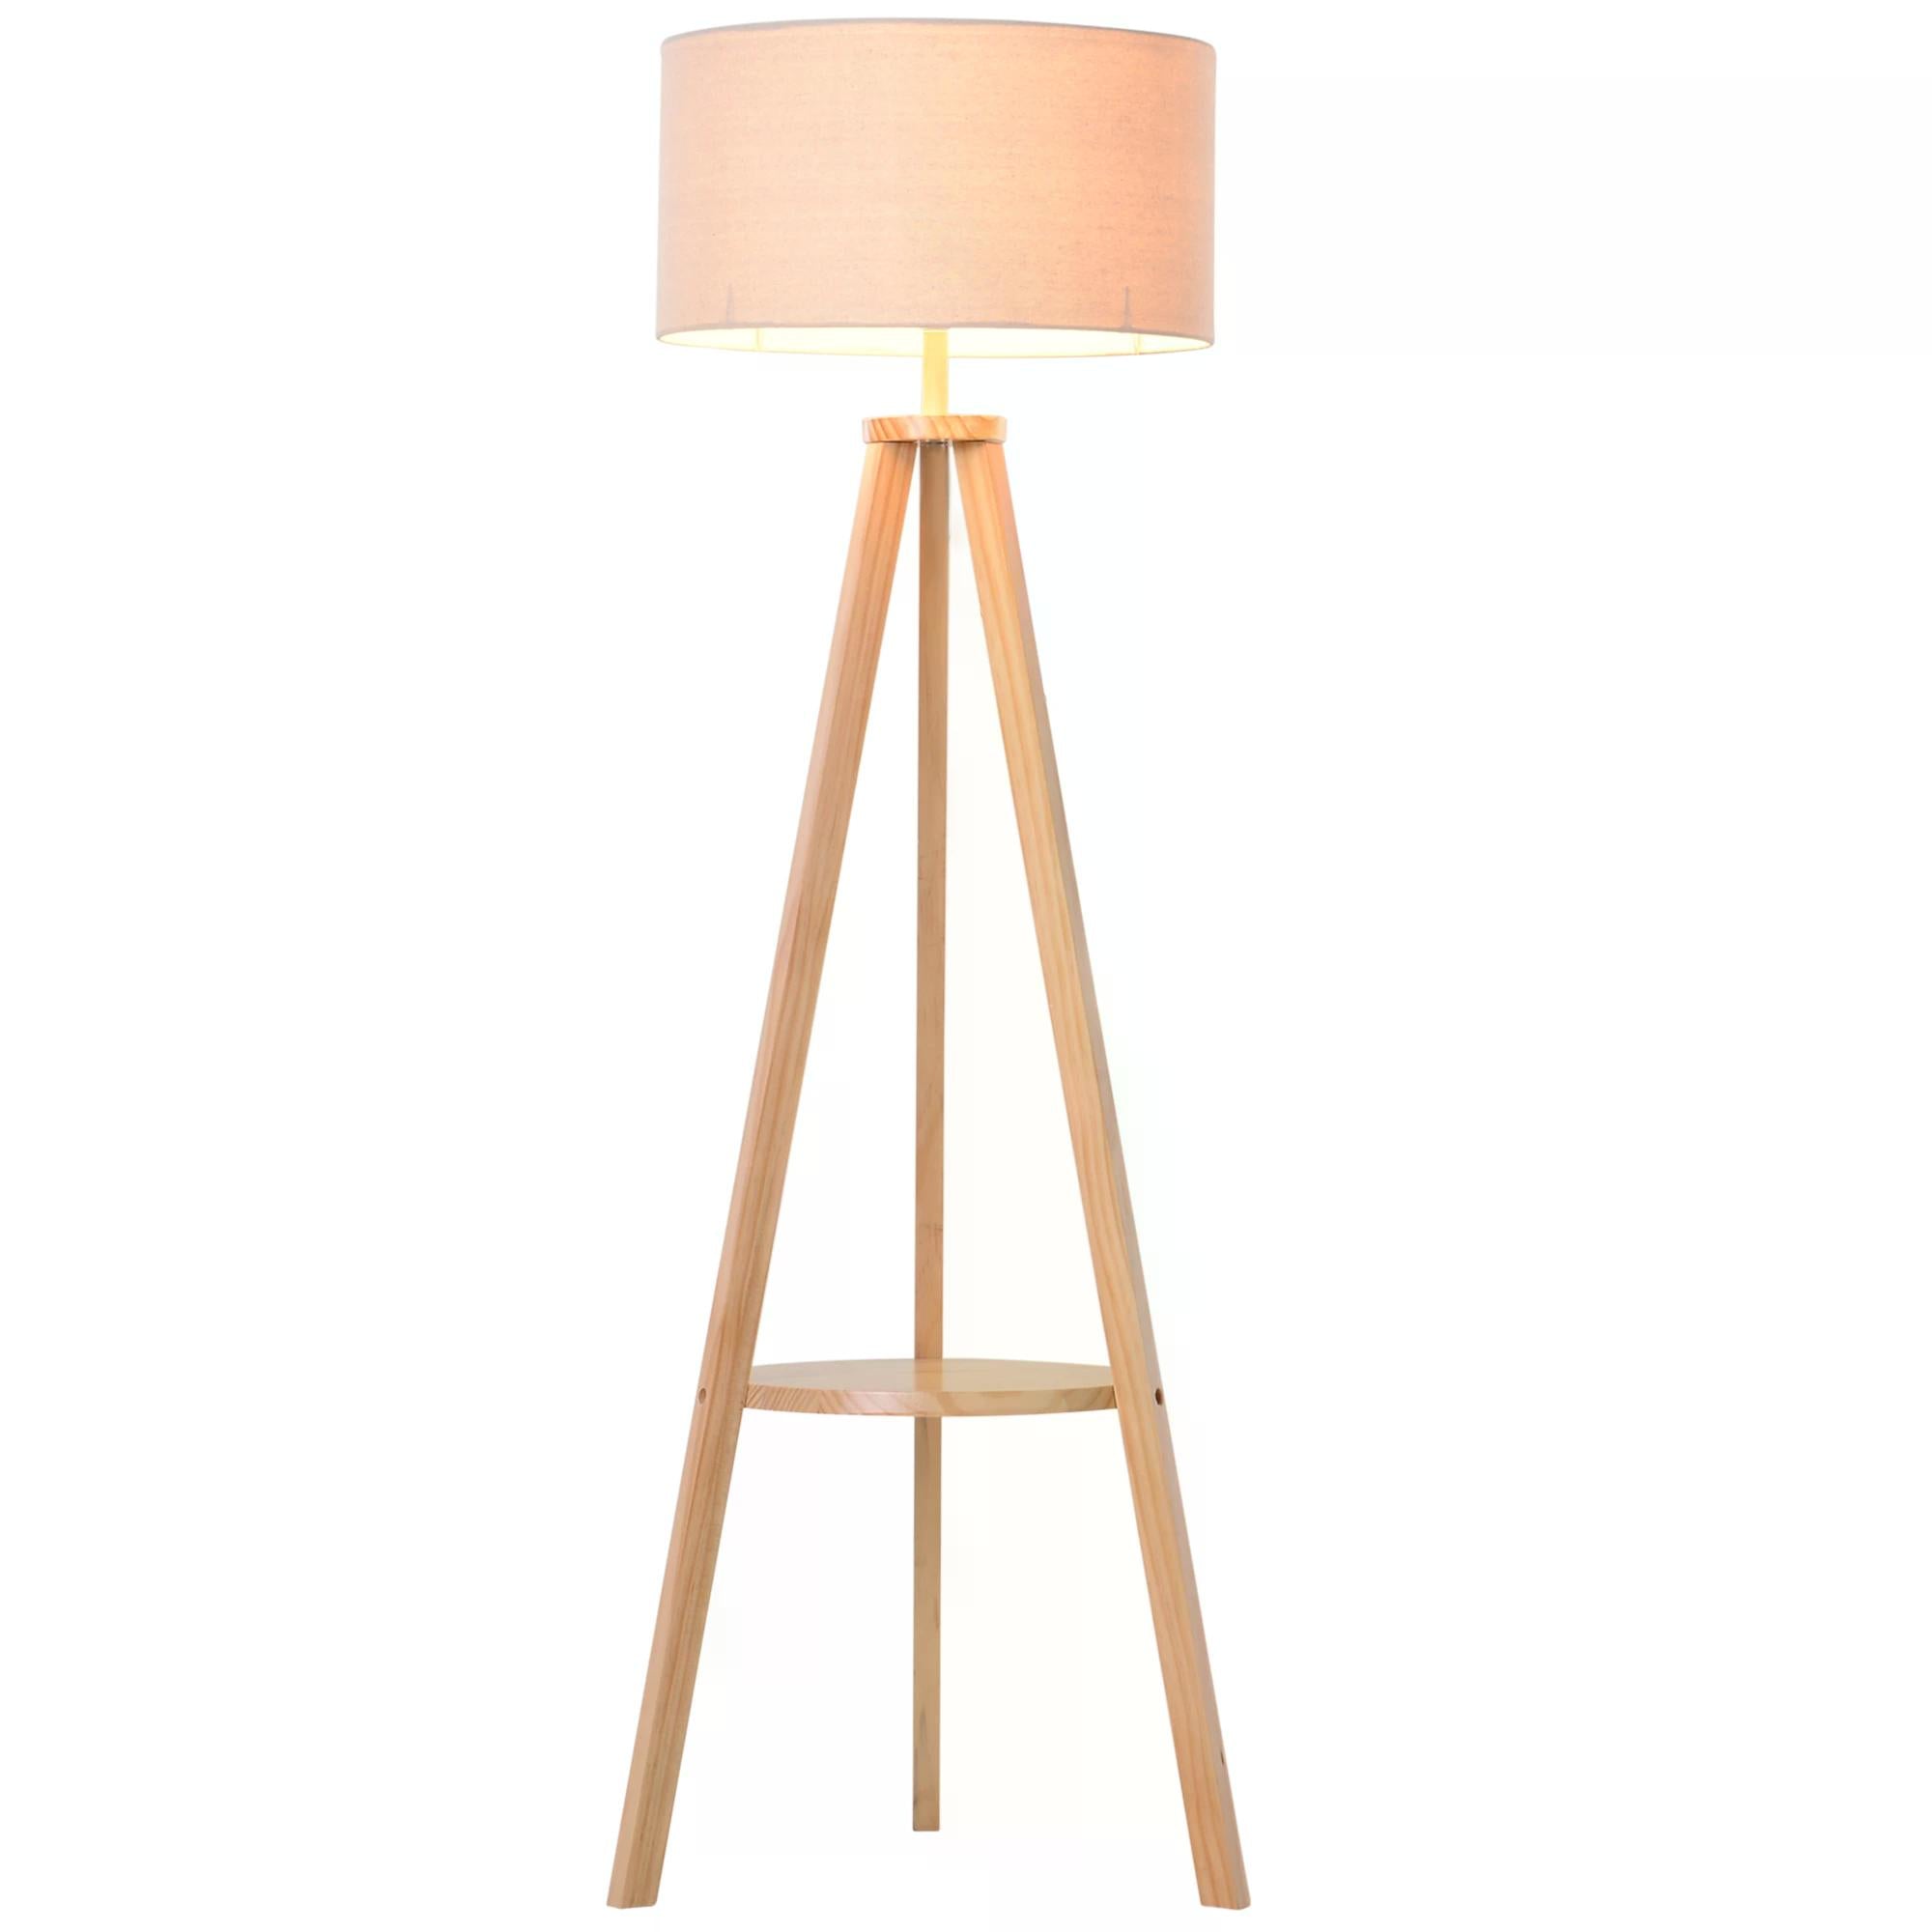 Freestanding Tripod Floor Lamp Bedside Light Reading Light with Storage Shelf Linen Shade for Living Room Bedroom, 154cm, Cream  AOSOM   